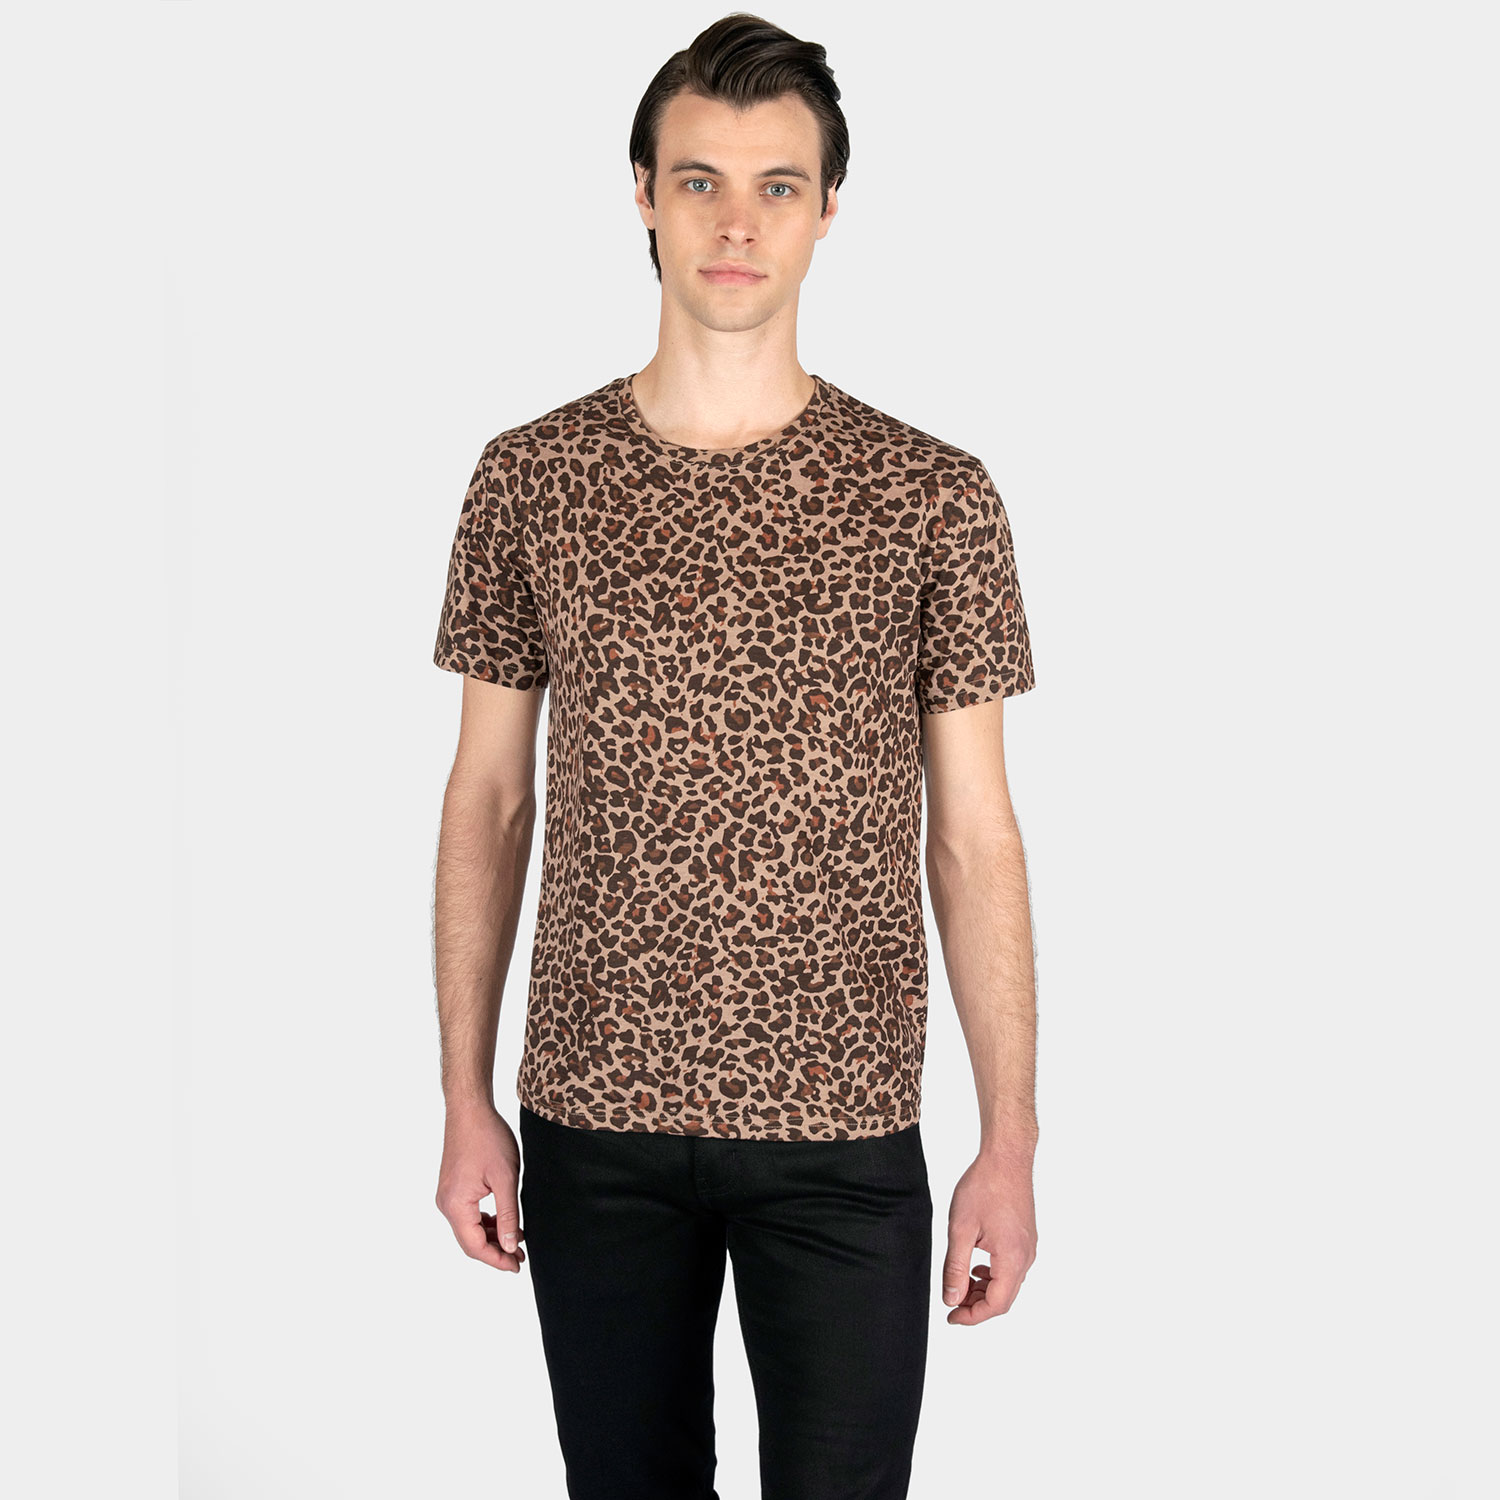 Jax - Leopard Print T-Shirt (Size XS, S, M, L, XL, 2XL, 3XL)